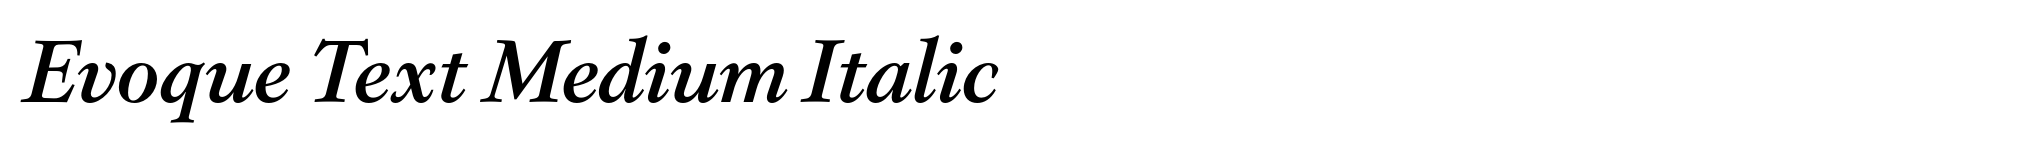 Evoque Text Medium Italic image